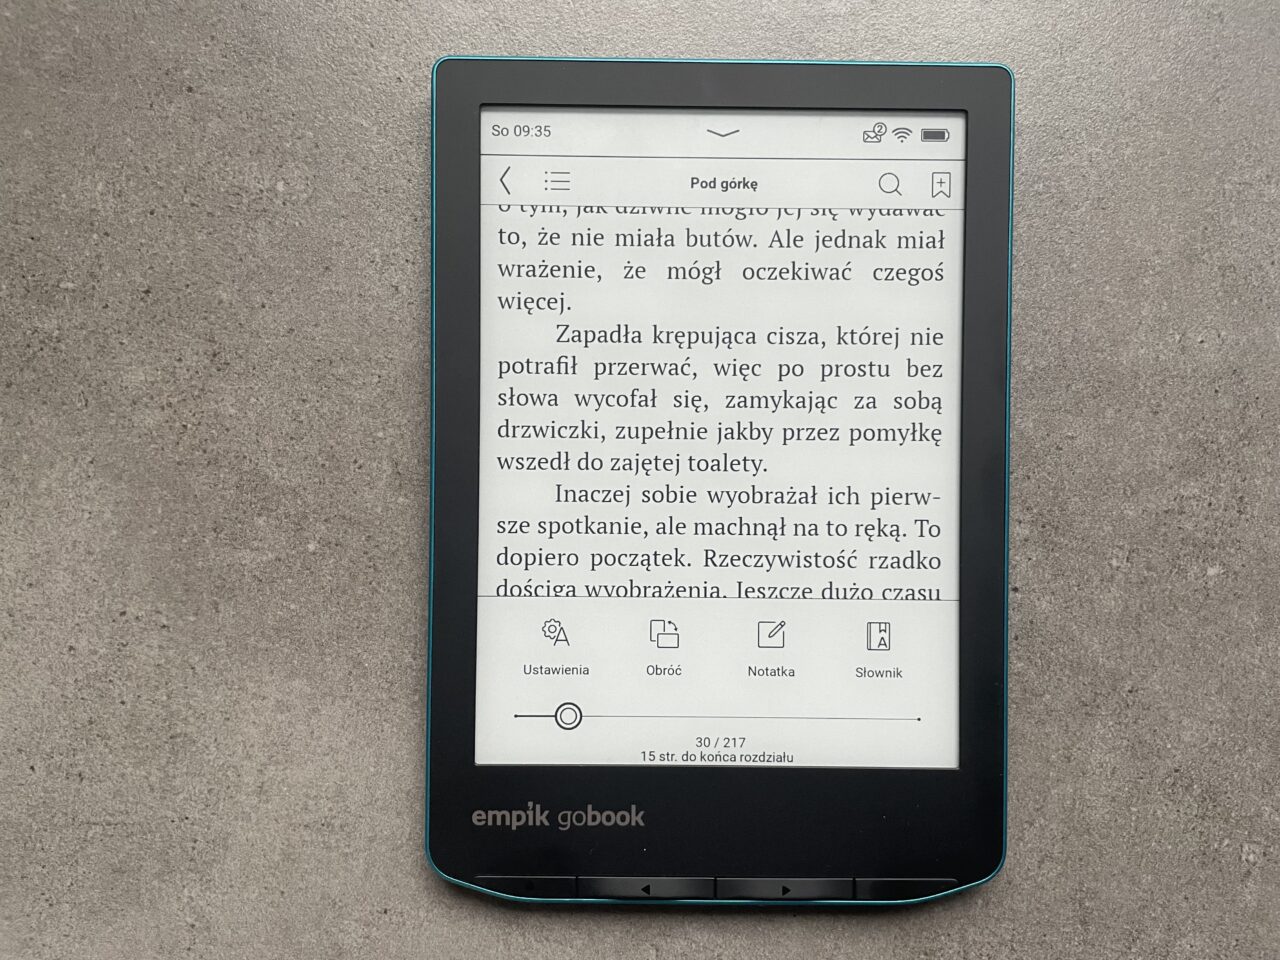 Czytnik e-booków leżący na szarym tle, wyświetlający tekst książki z zaznaczonym interfejsem użytkownika.